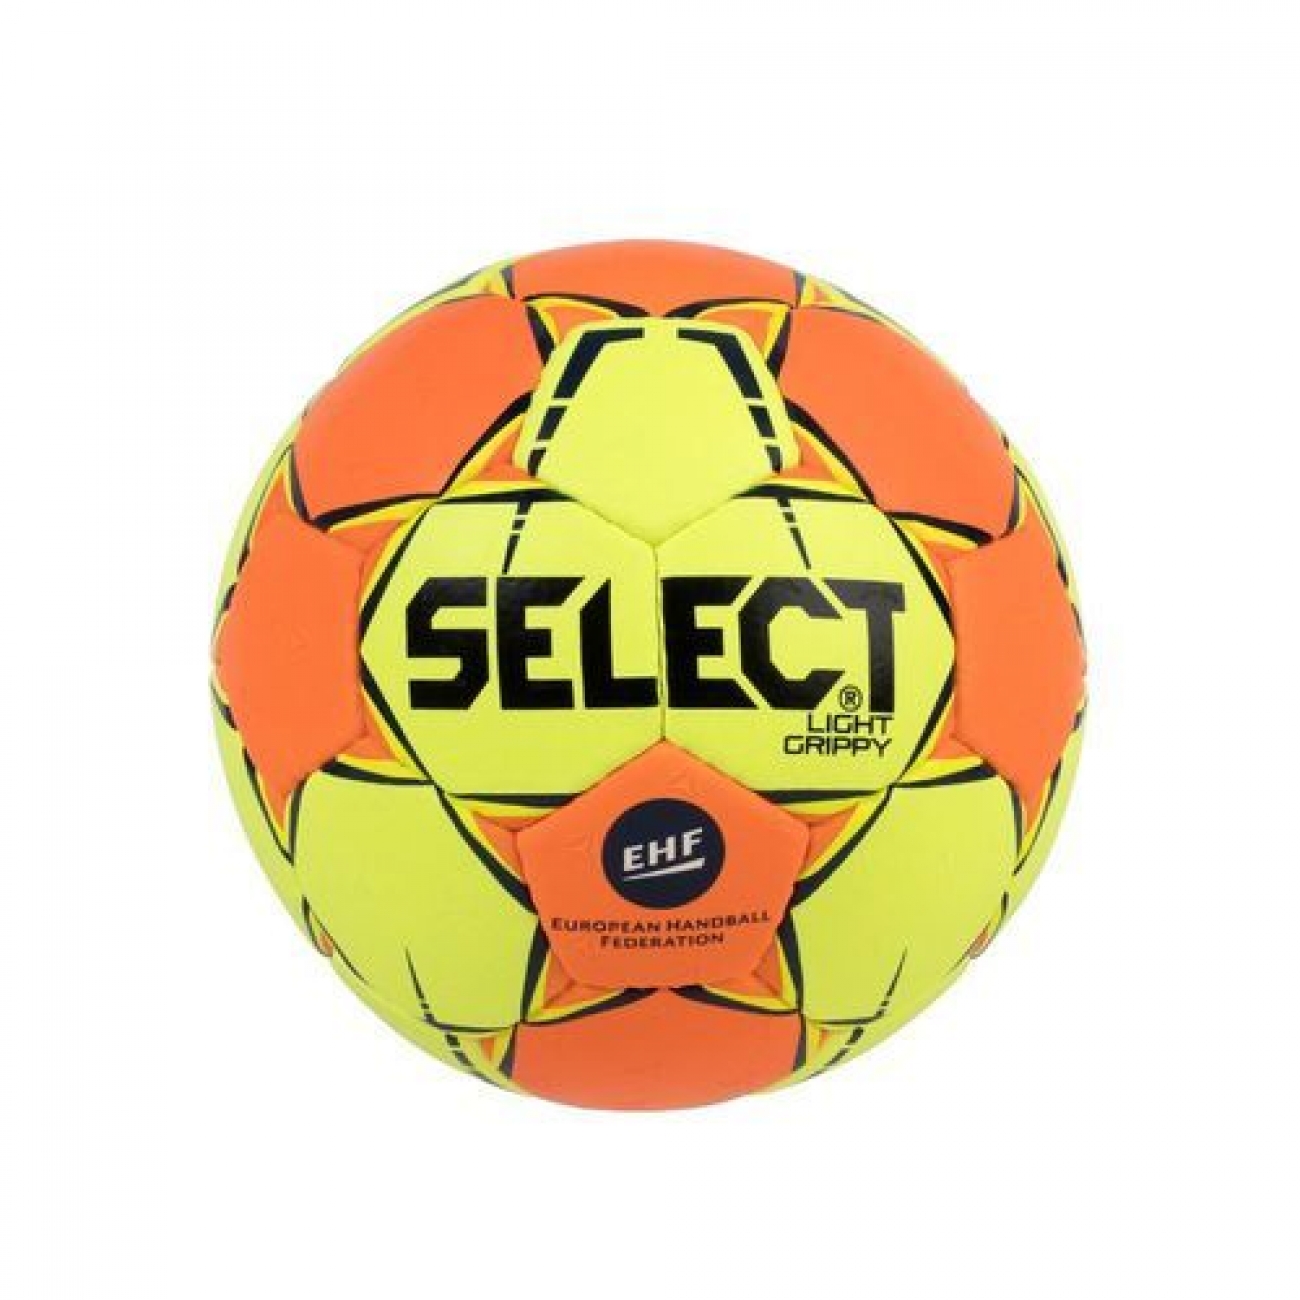 Piłka ręczna Light Grippy EHF Select 1 – główny